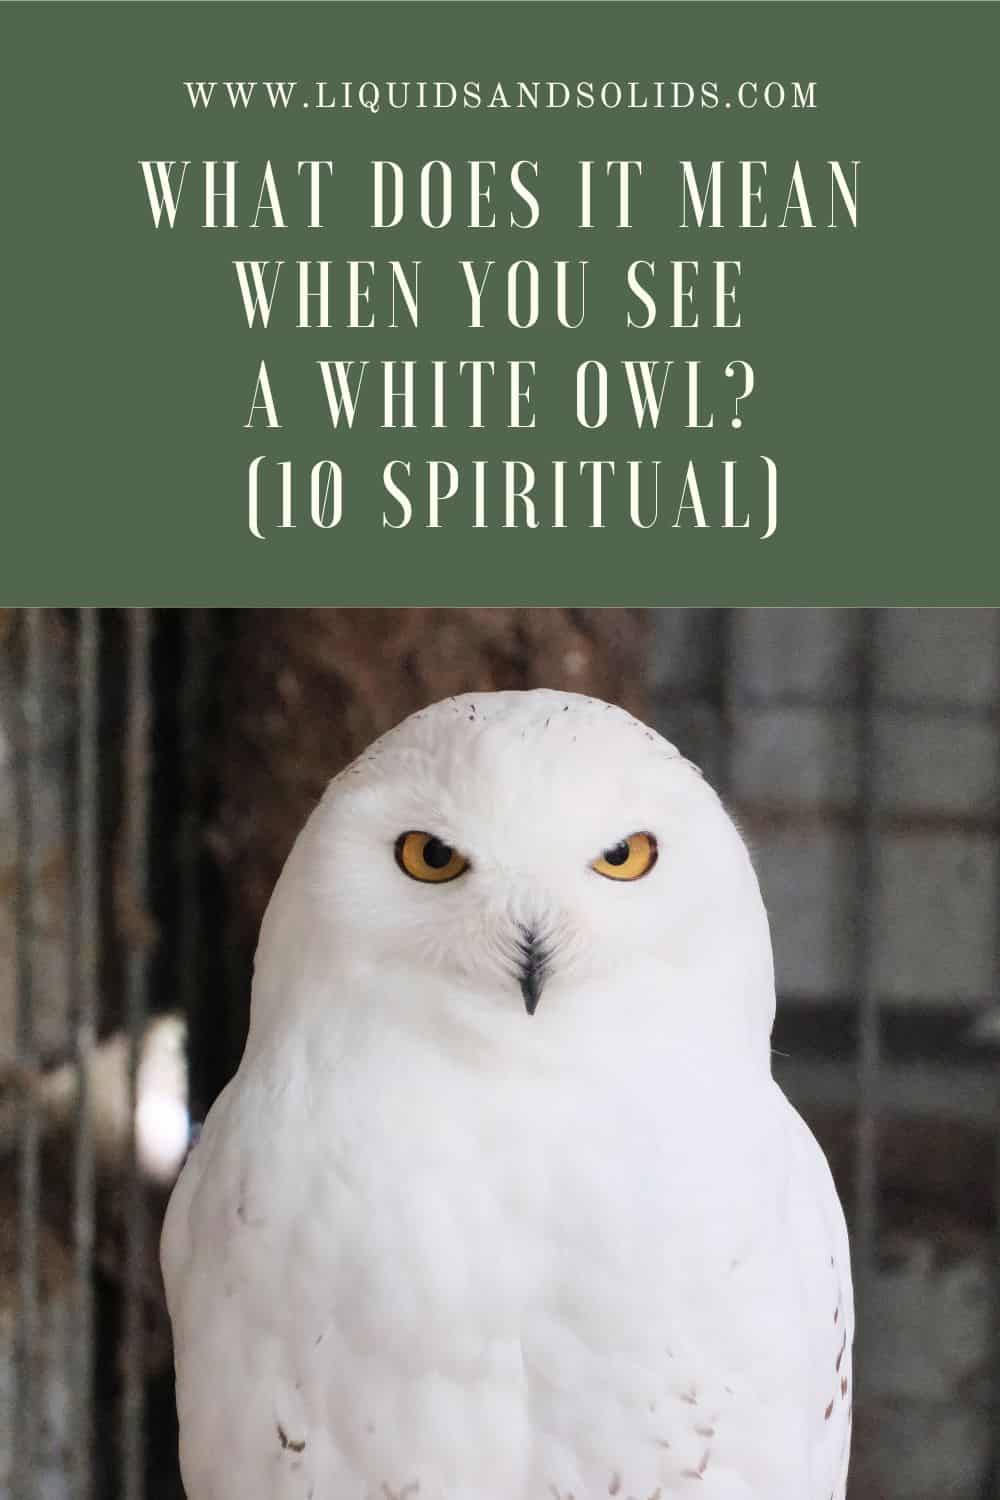  Mit jelent, ha fehér baglyot látsz? (10 spirituális jelentés)